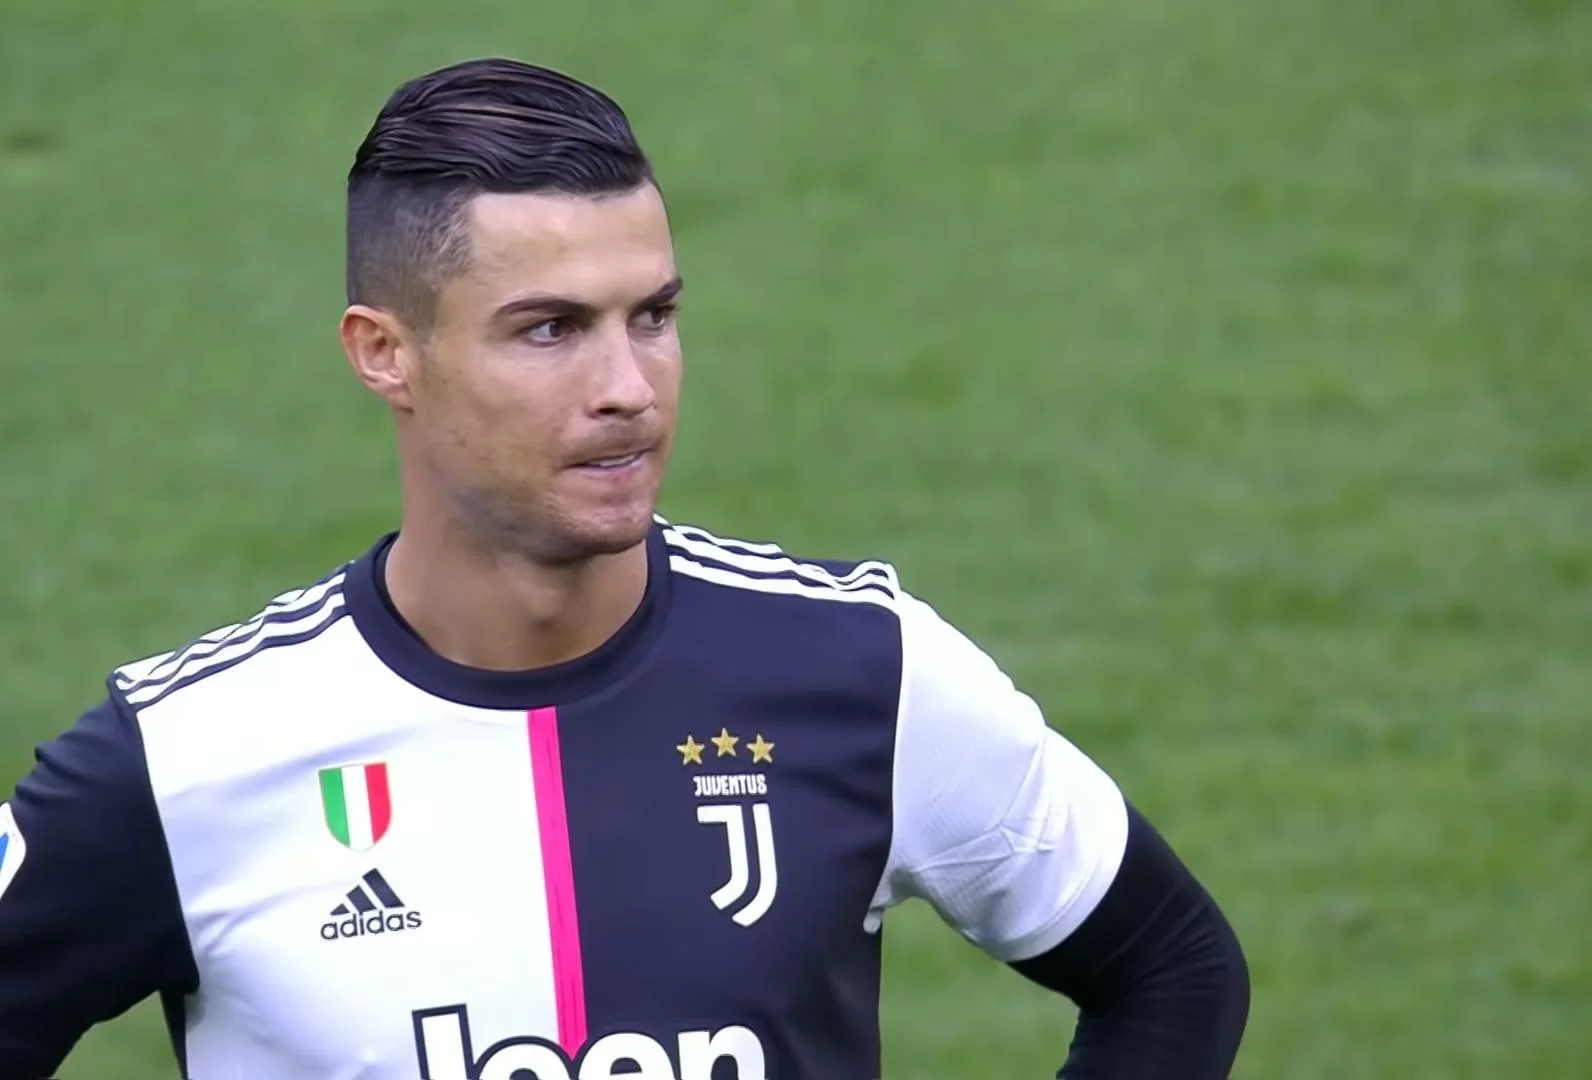 Allenamento pomeridiano, Ronaldo ancora out per sinusite